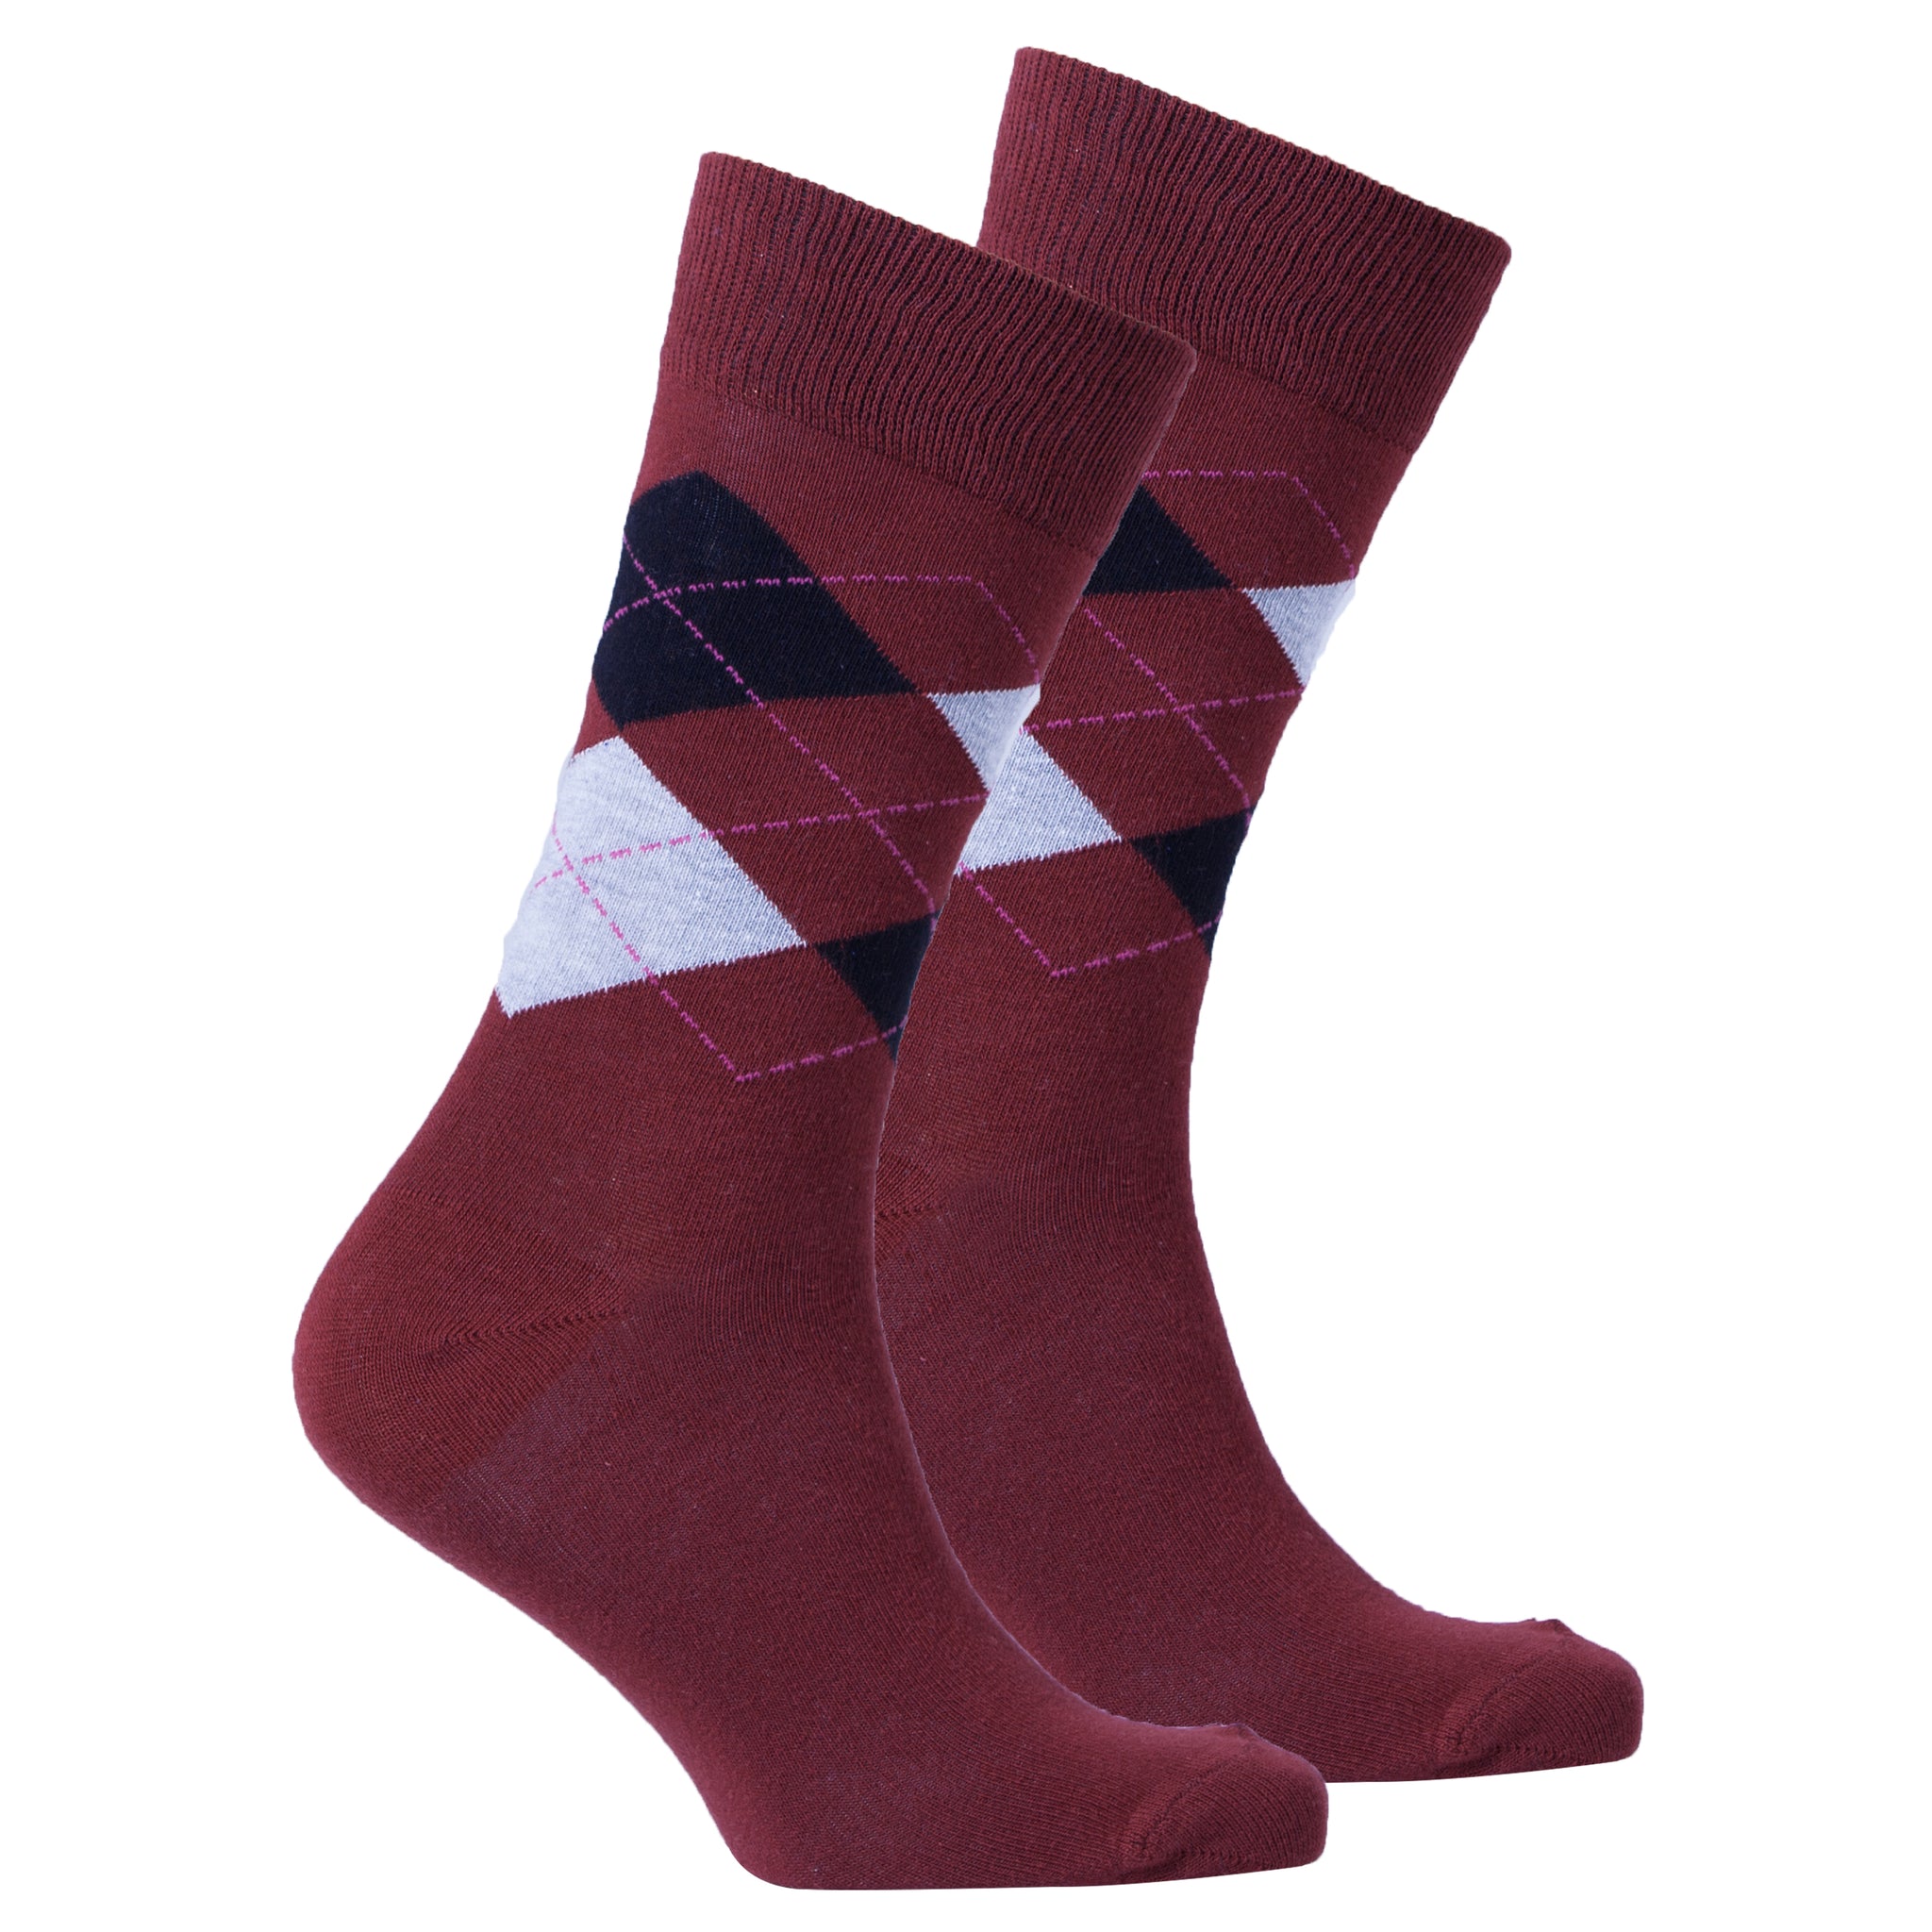 Men's Burgundy Argyle Socks - Socks n Socks